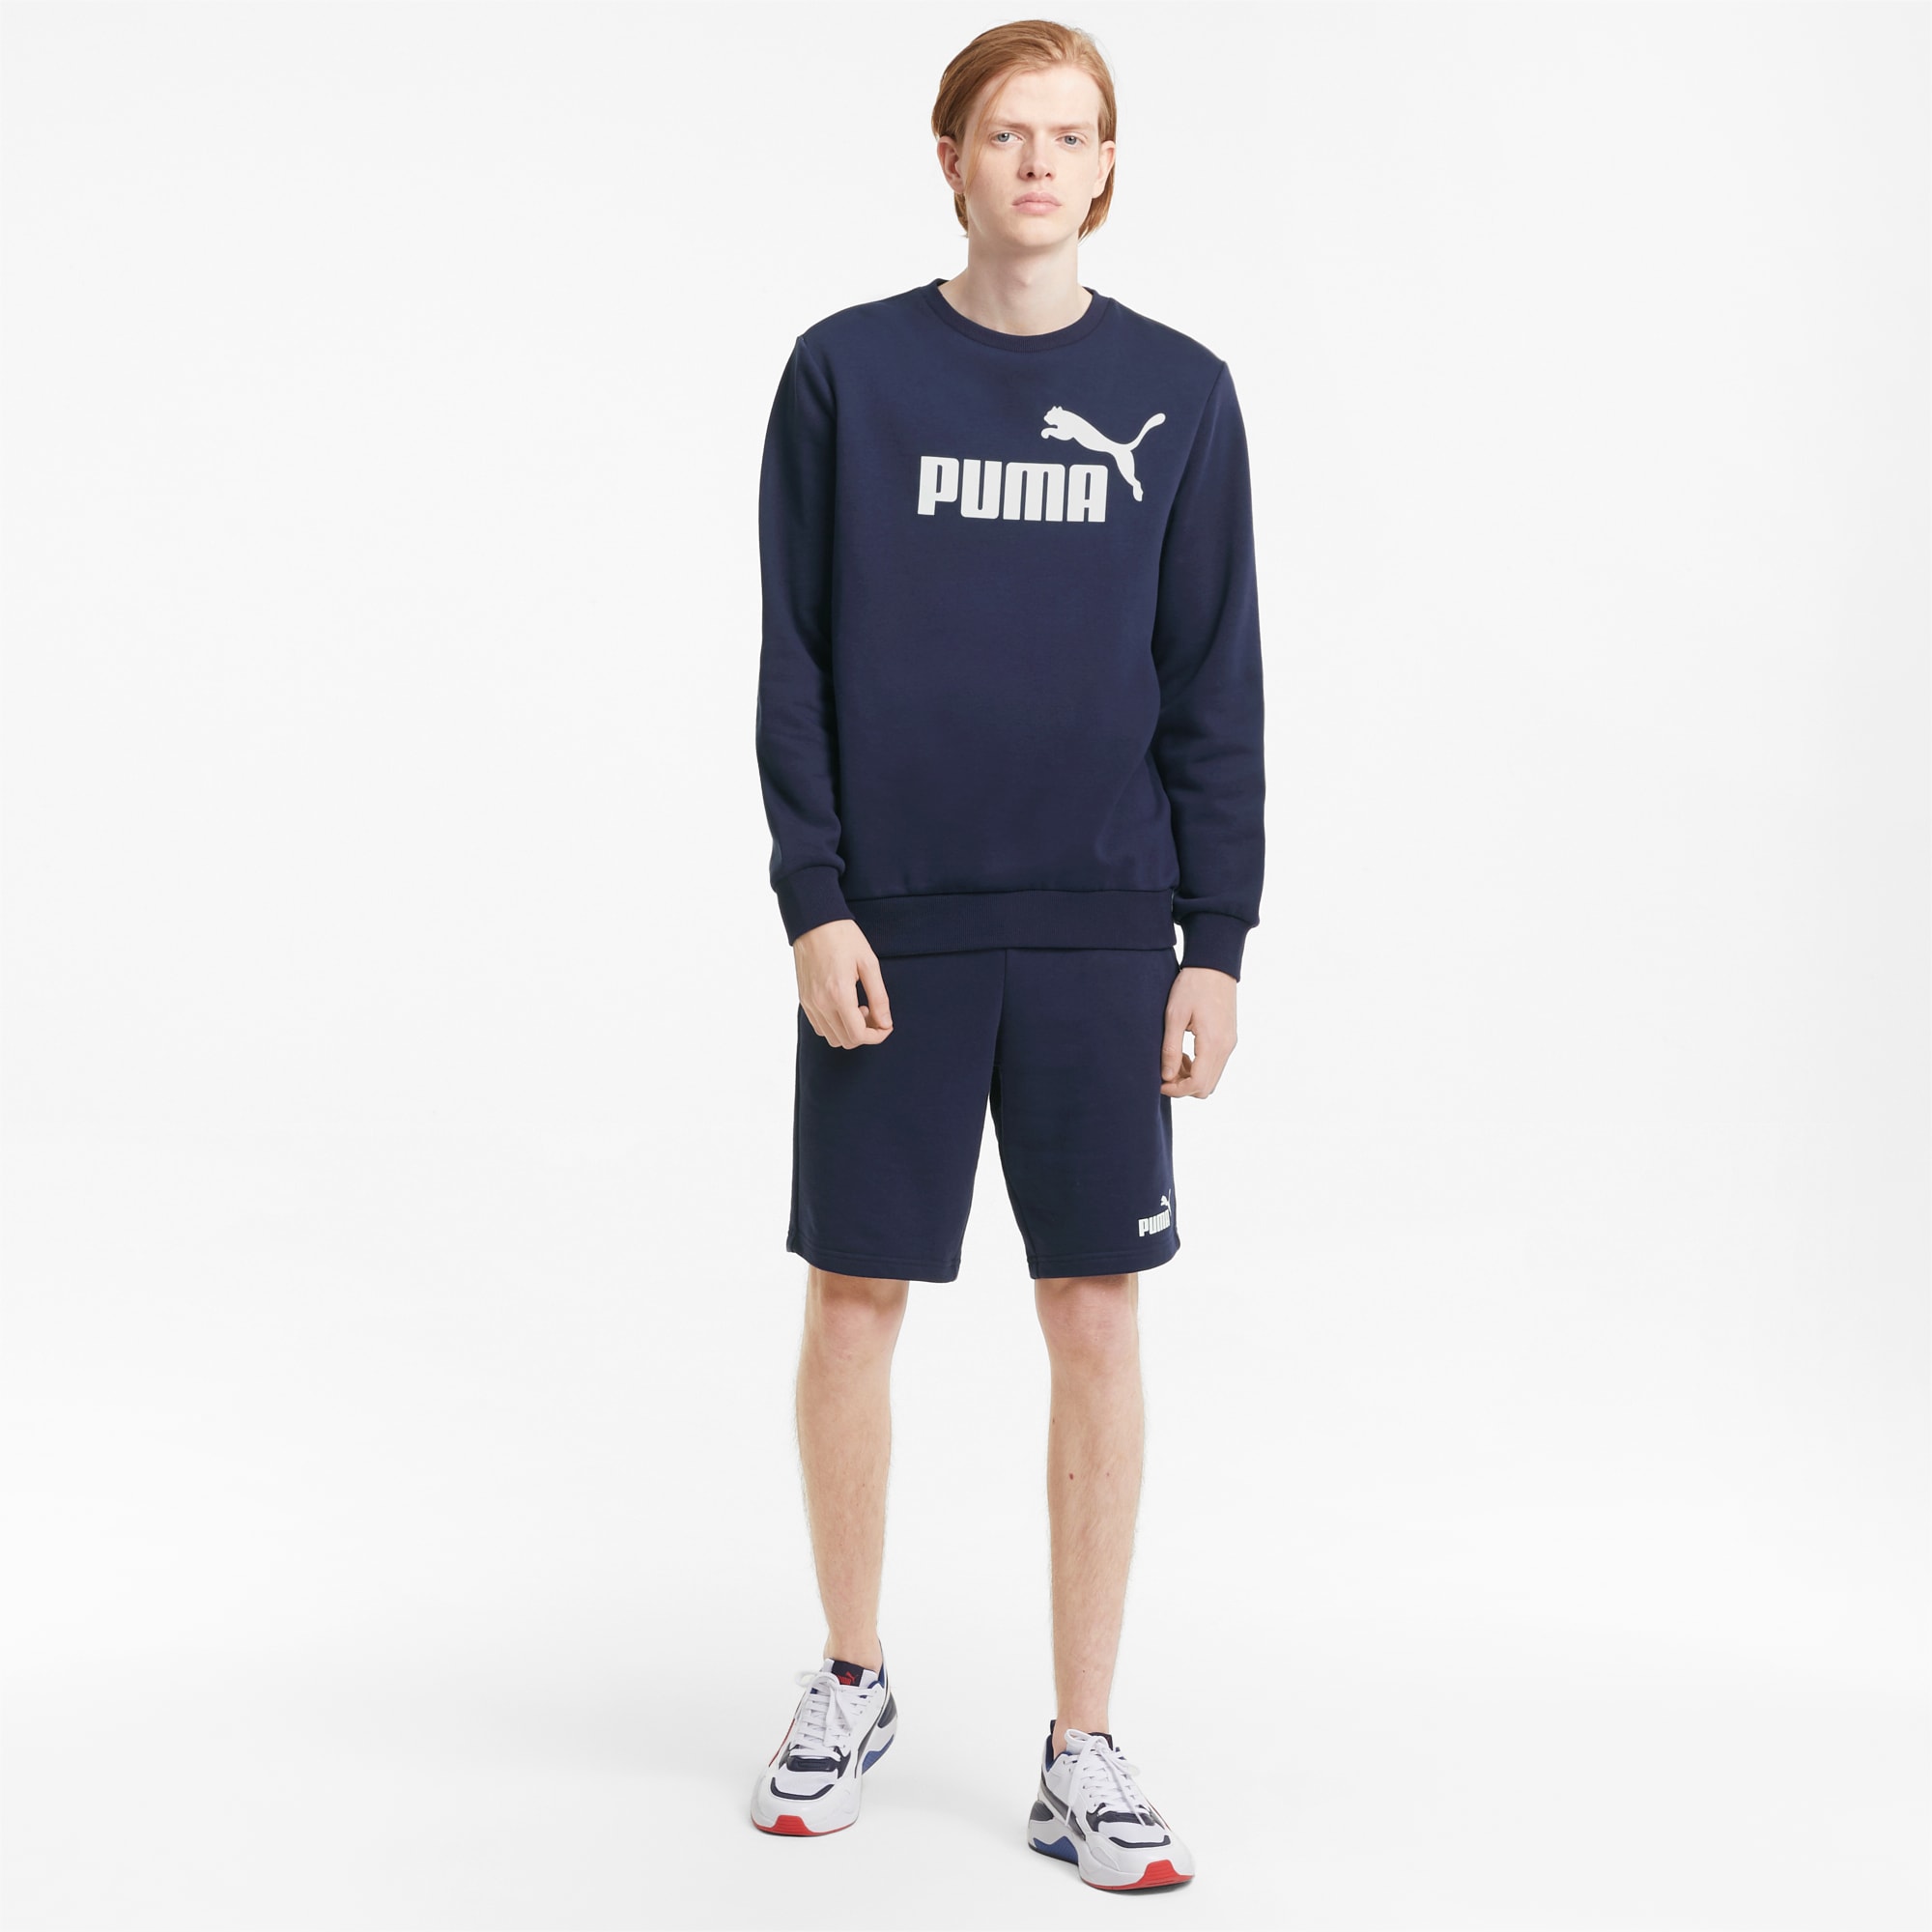 PUMA Essentials Men's Shorts, Peacoat, Size XS, Clothing